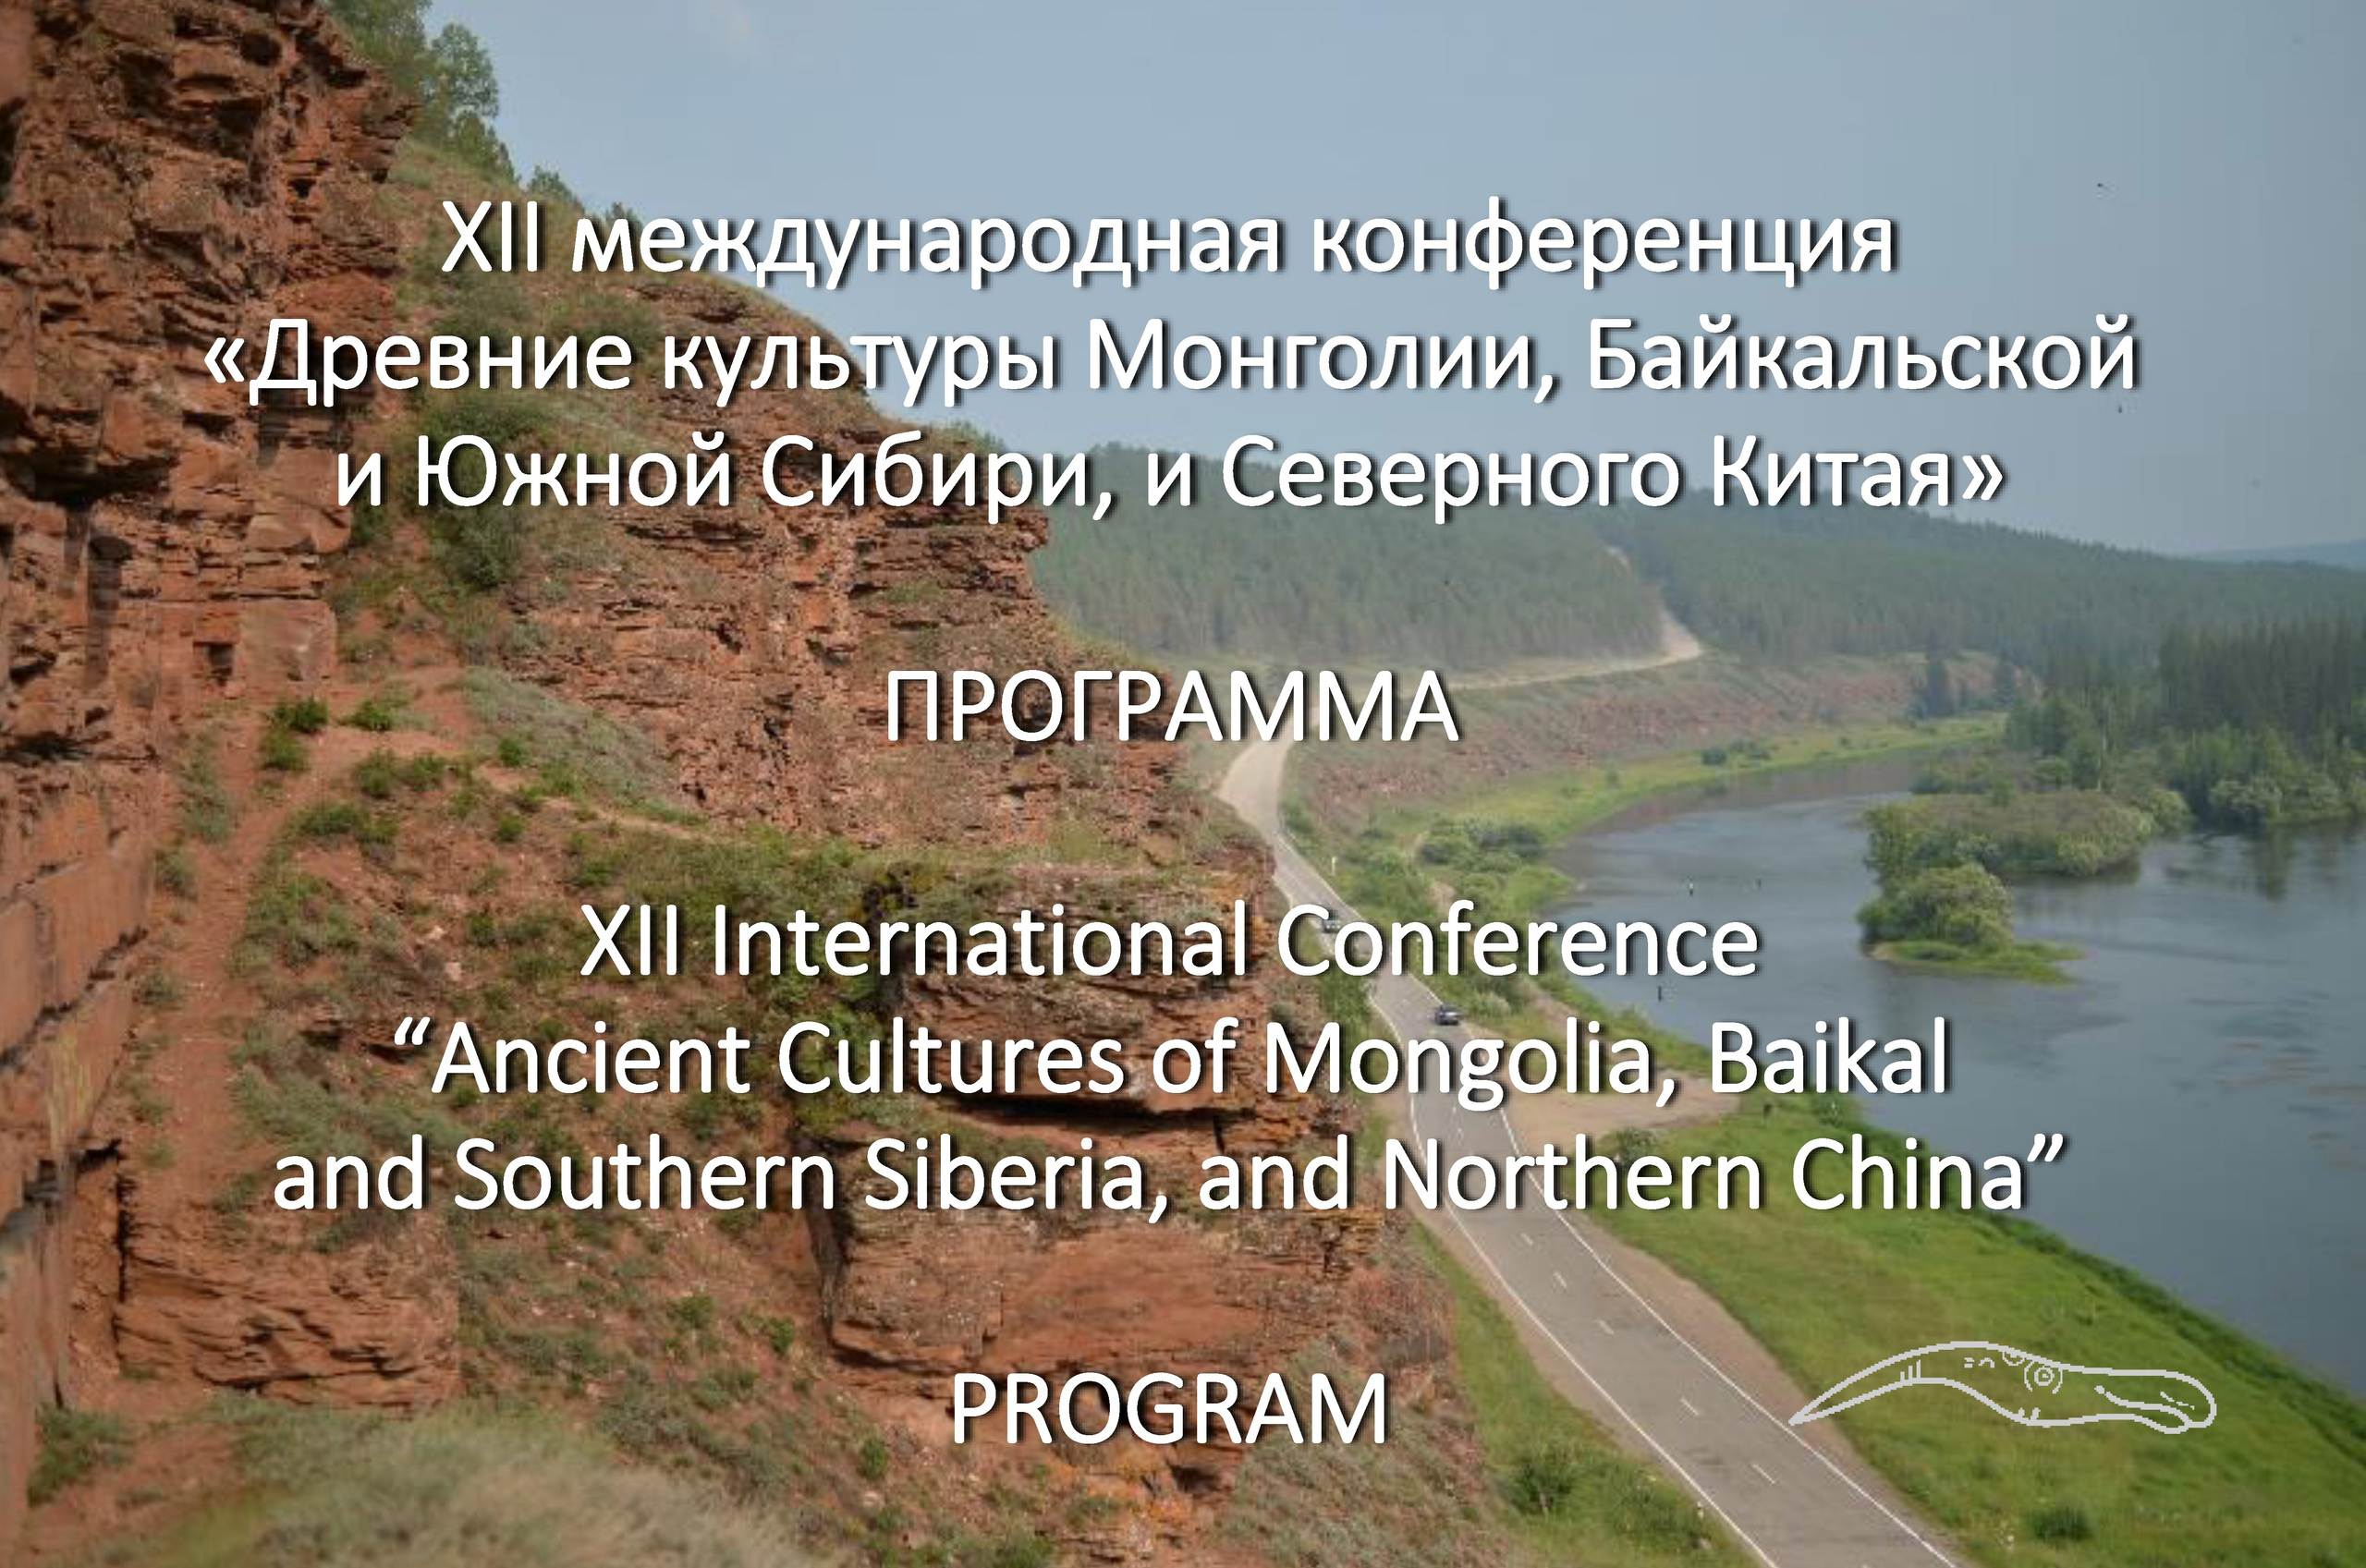 25-30 сентября состоится XII Международная научная конференция "Древние культуры Монголии, Байкальской и Южной Сибири, и Северного Китая"